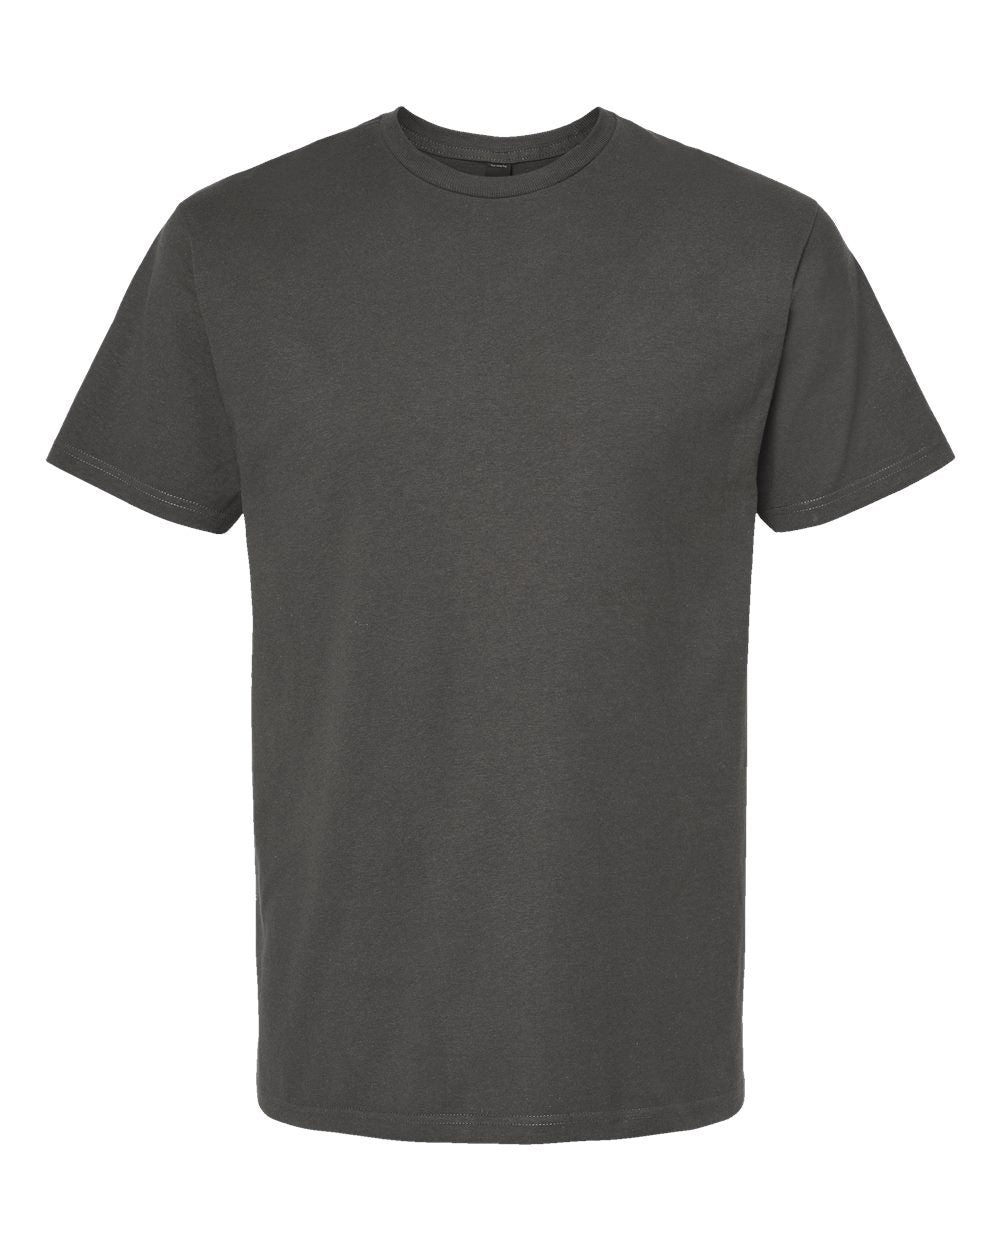 Tultex - Unisex Heavyweight Jersey T-Shirt - 290